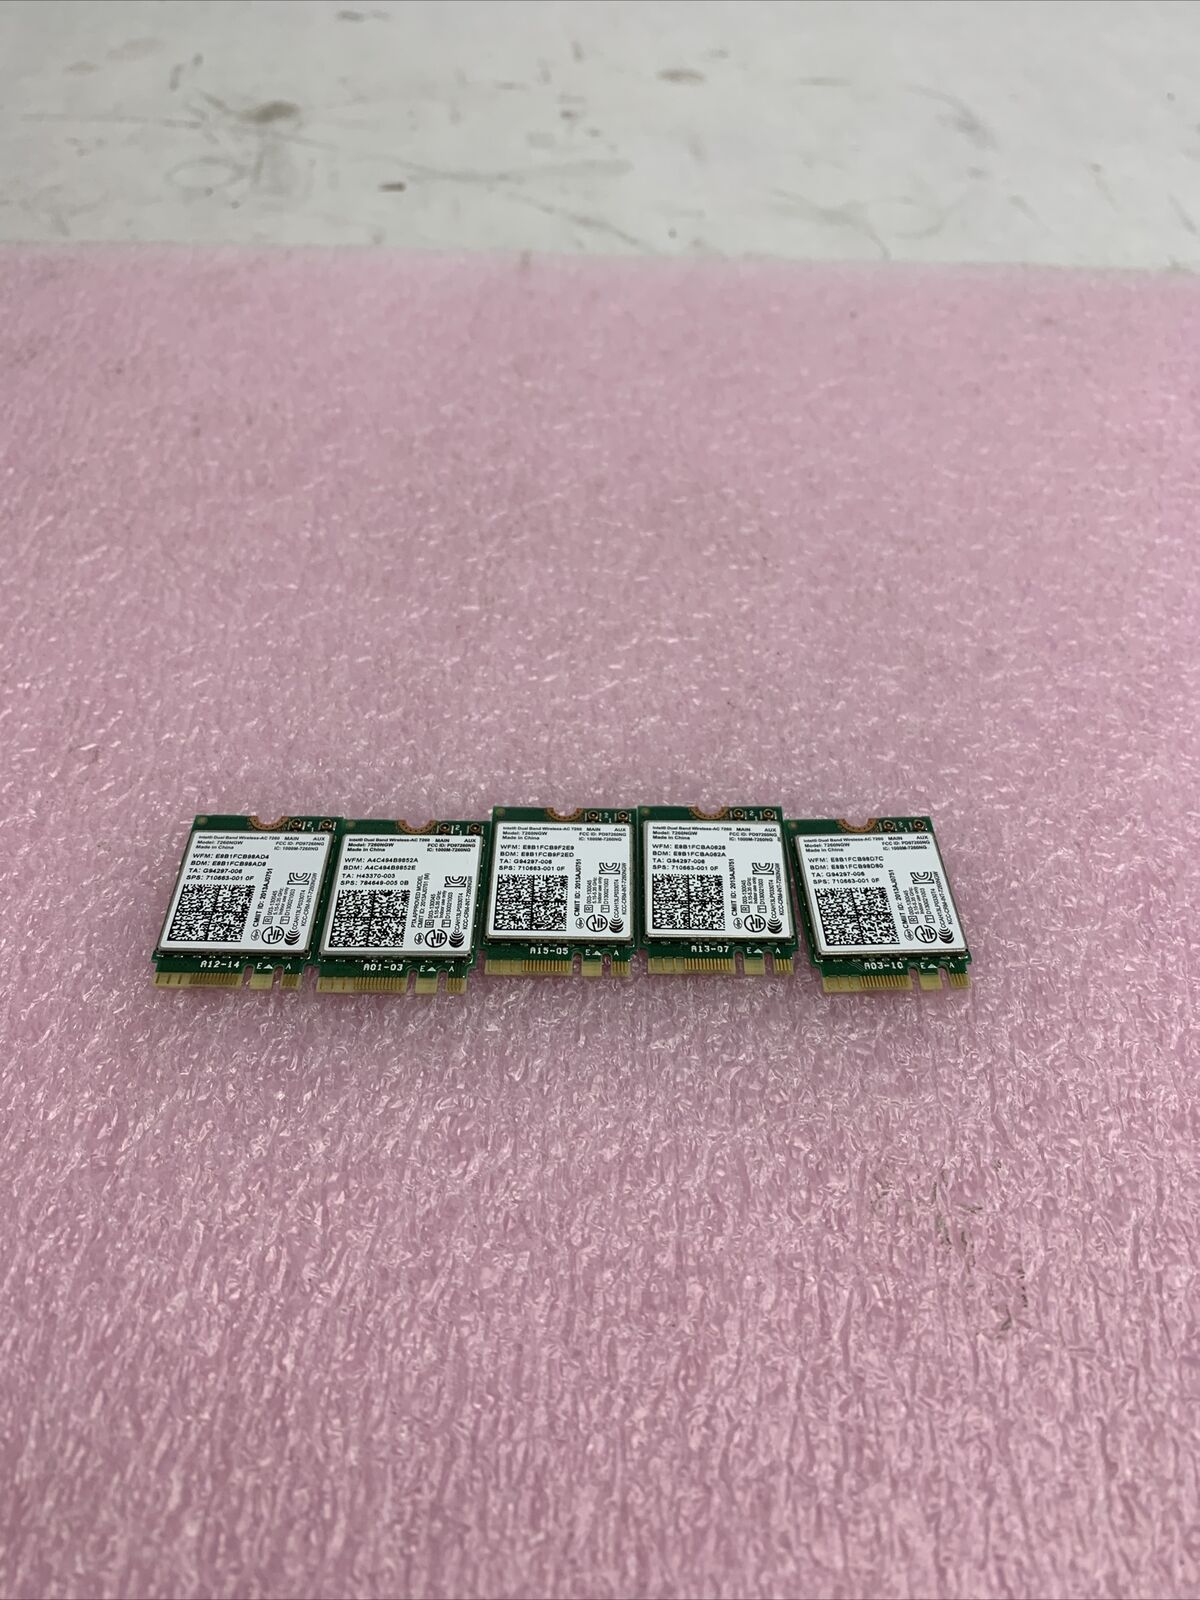 Lot of 5 Intel Dual Band Wireless-AC 7260